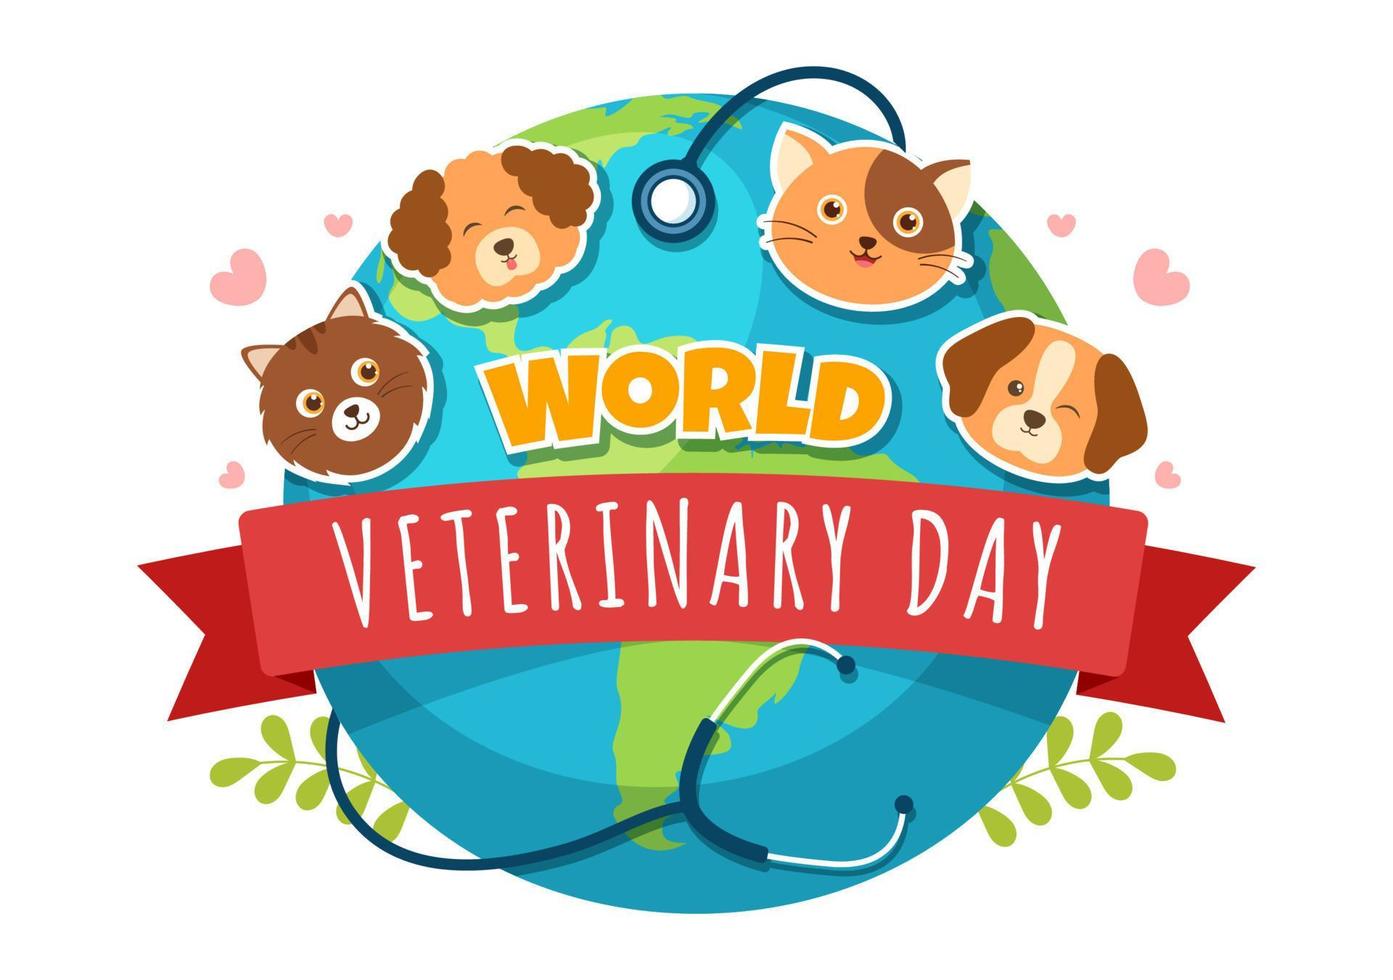 dia mundial da veterinária em 29 de abril ilustração com médico e animais fofos cães ou gatos em desenhos animados planos desenhados à mão para modelos de página de destino vetor